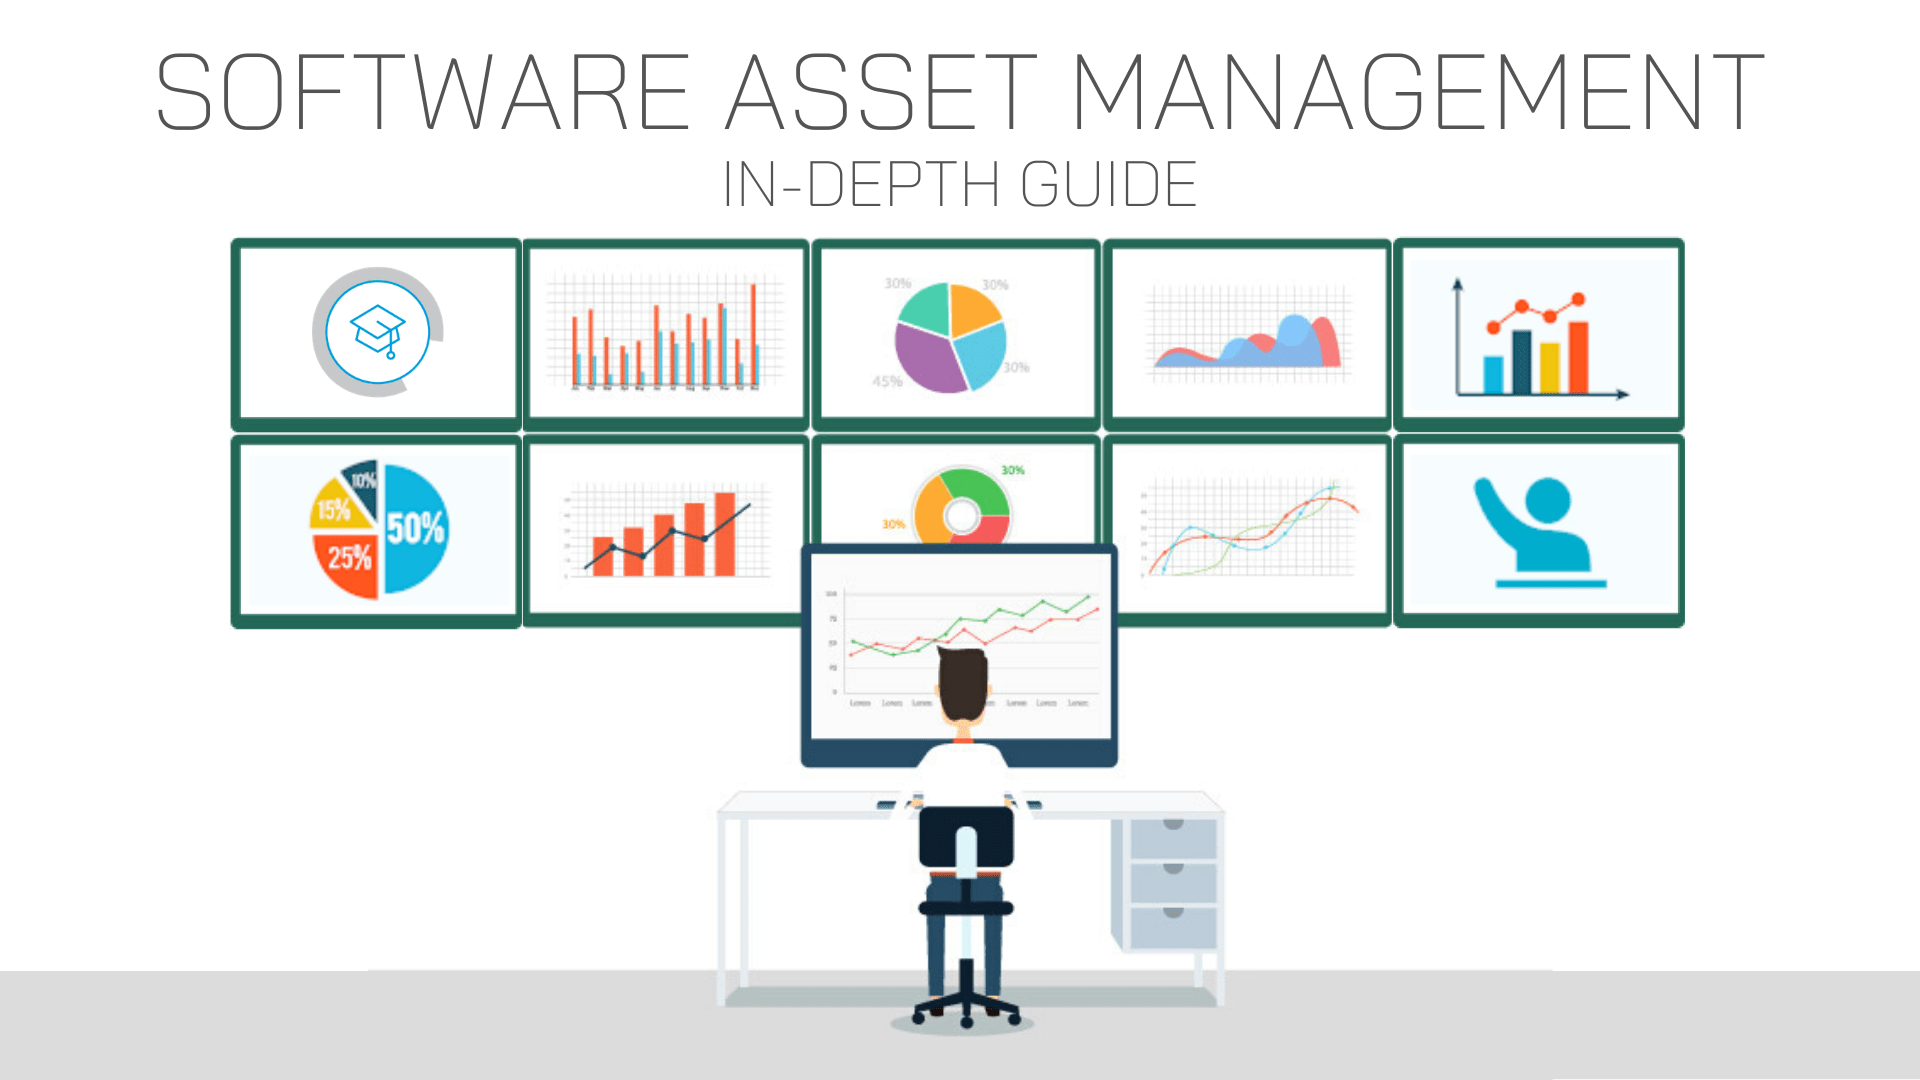 software asset management sam download